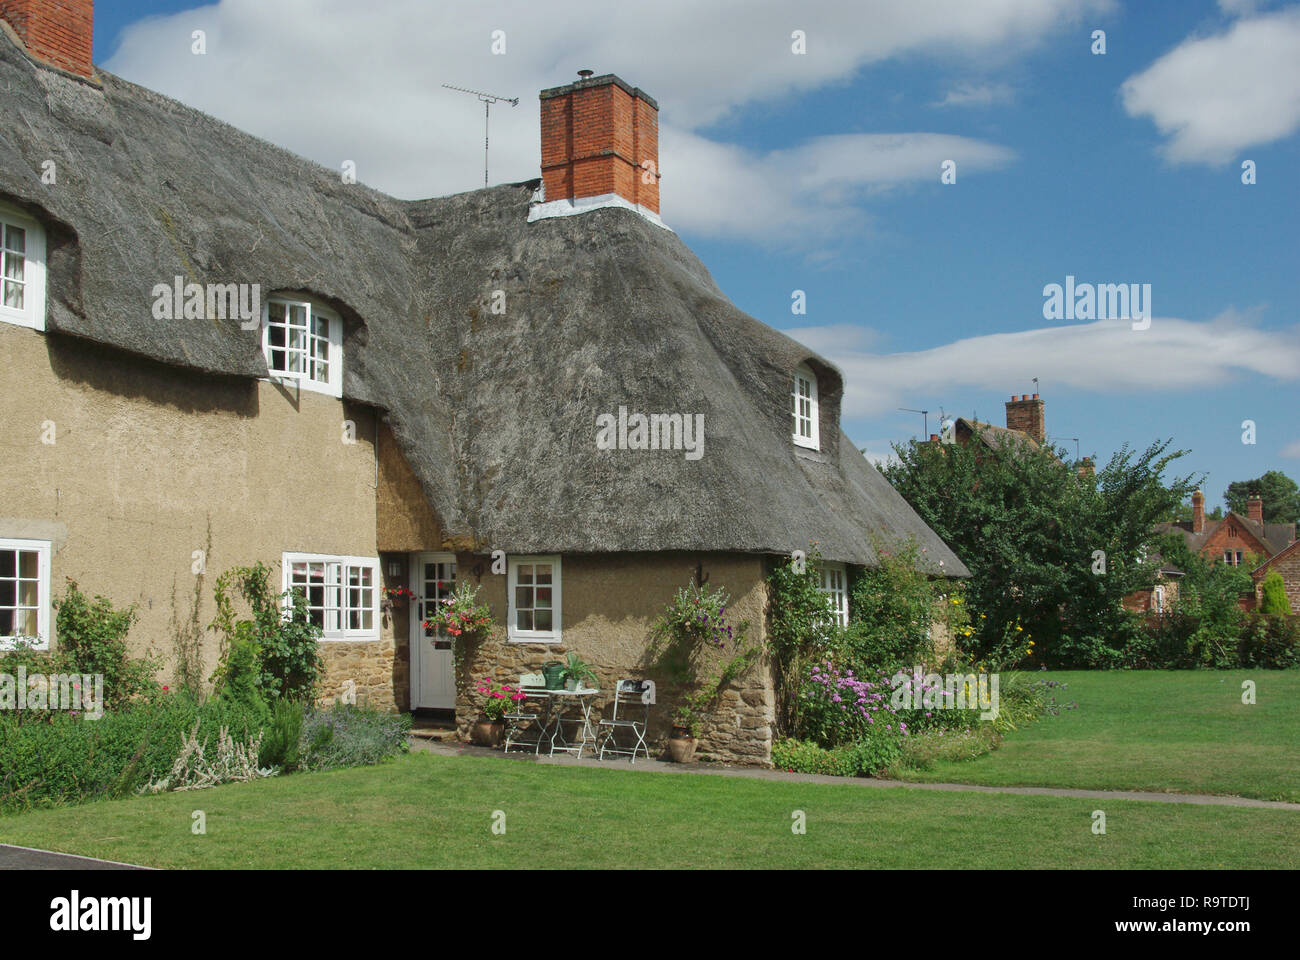 Una pittoresca terrazza del cottage con il tetto di paglia nel villaggio di Ashby St partitari, Northamptonshire, Regno Unito; costruita nei primi anni del XX secolo da Sir Edwin Lutyens. Foto Stock